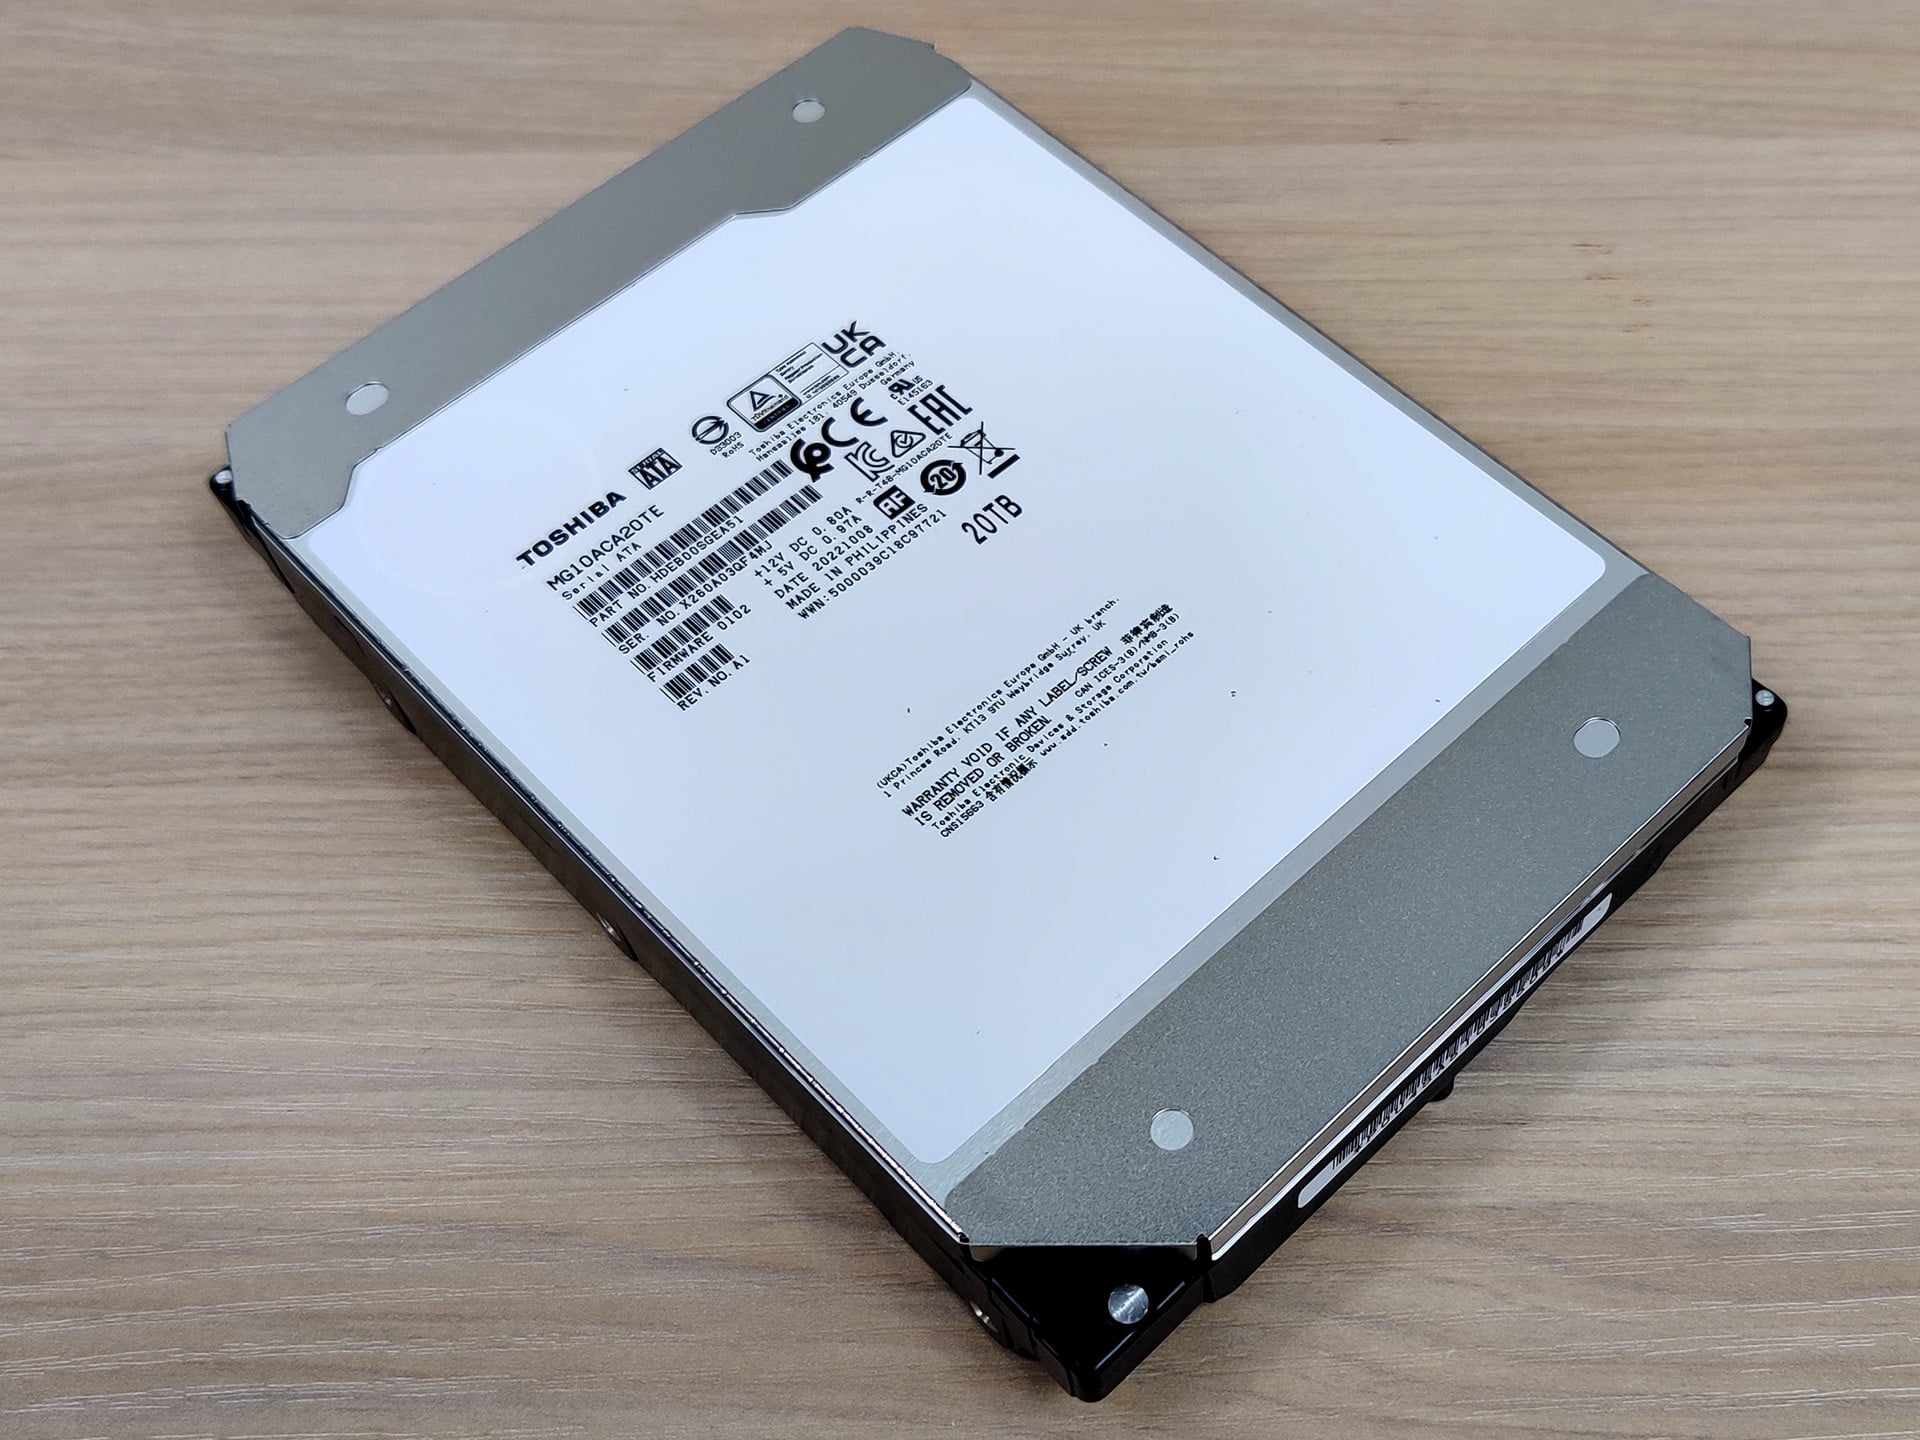 Toshiba lance le premier disque dur de 18 To doté de la technologie  d'enregistrement MAMR